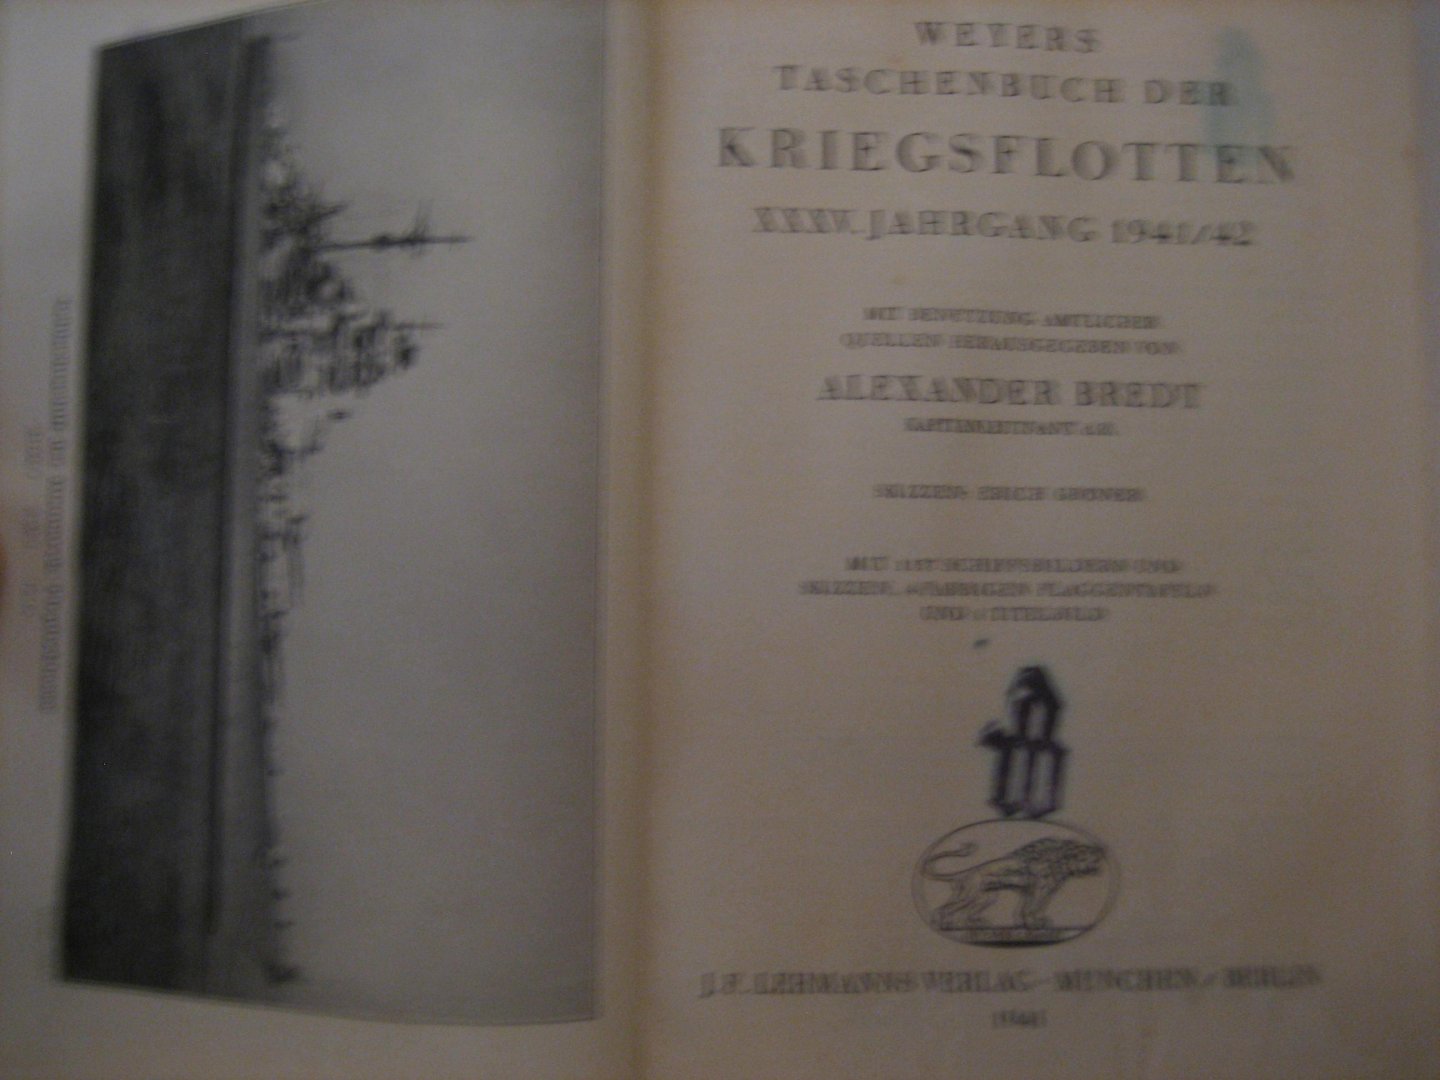 Alexander Bredt - Weyers Taschenbuch der Kriegsflotten XXXV. jahrgang 1941/1942